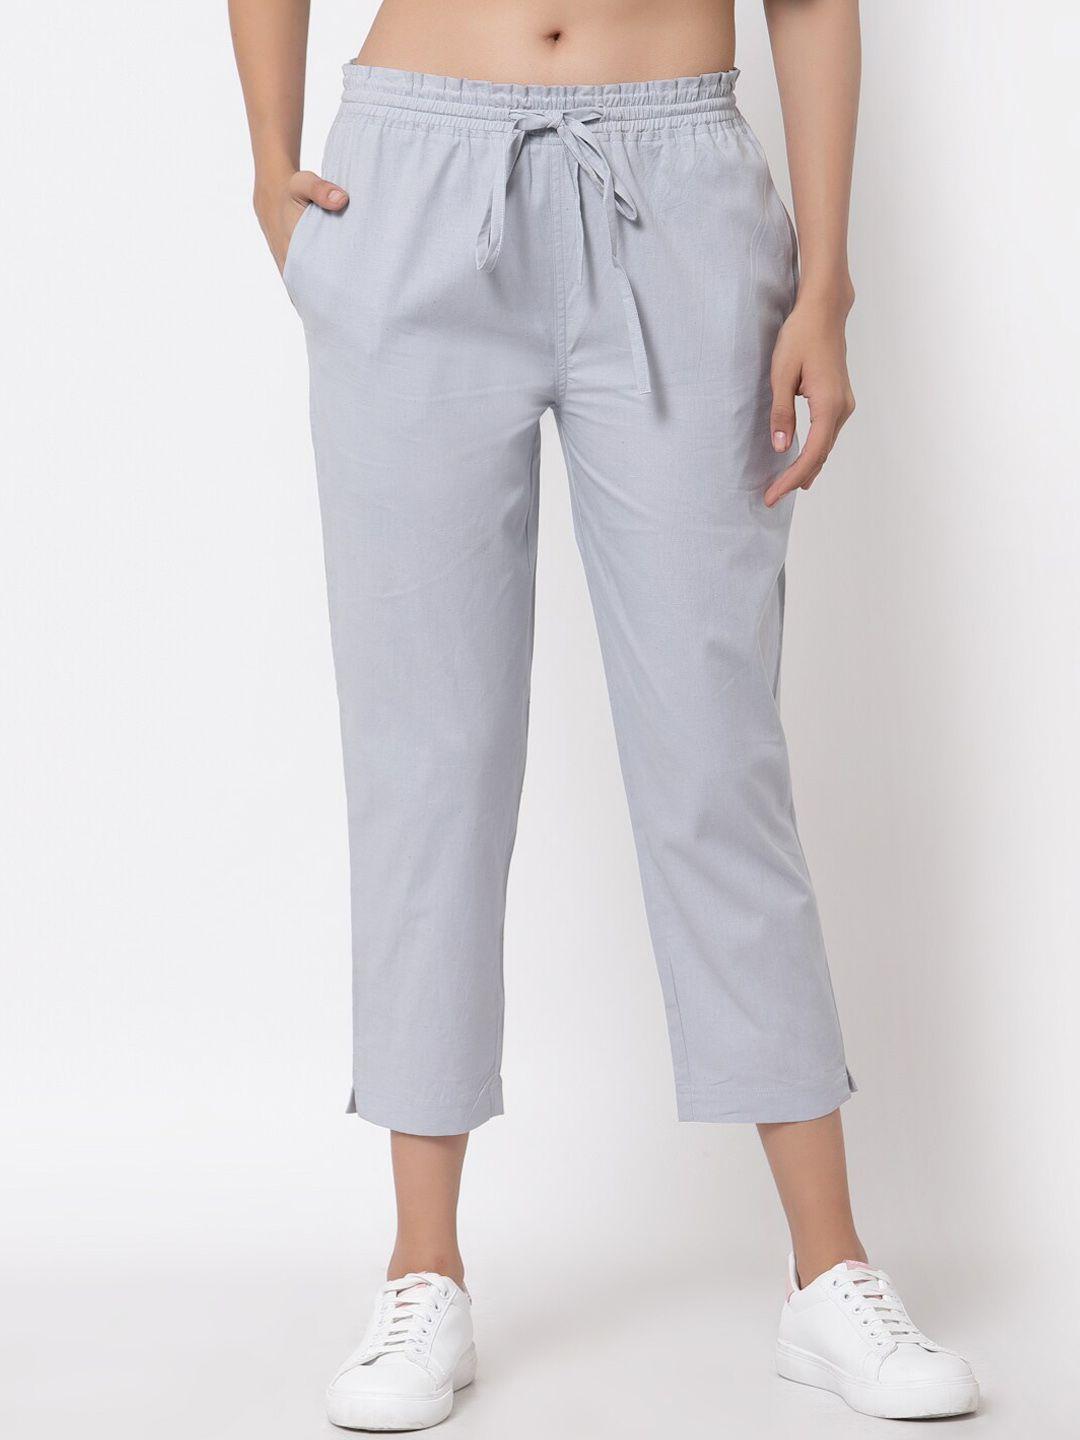 j style women grey cropped smart trousers